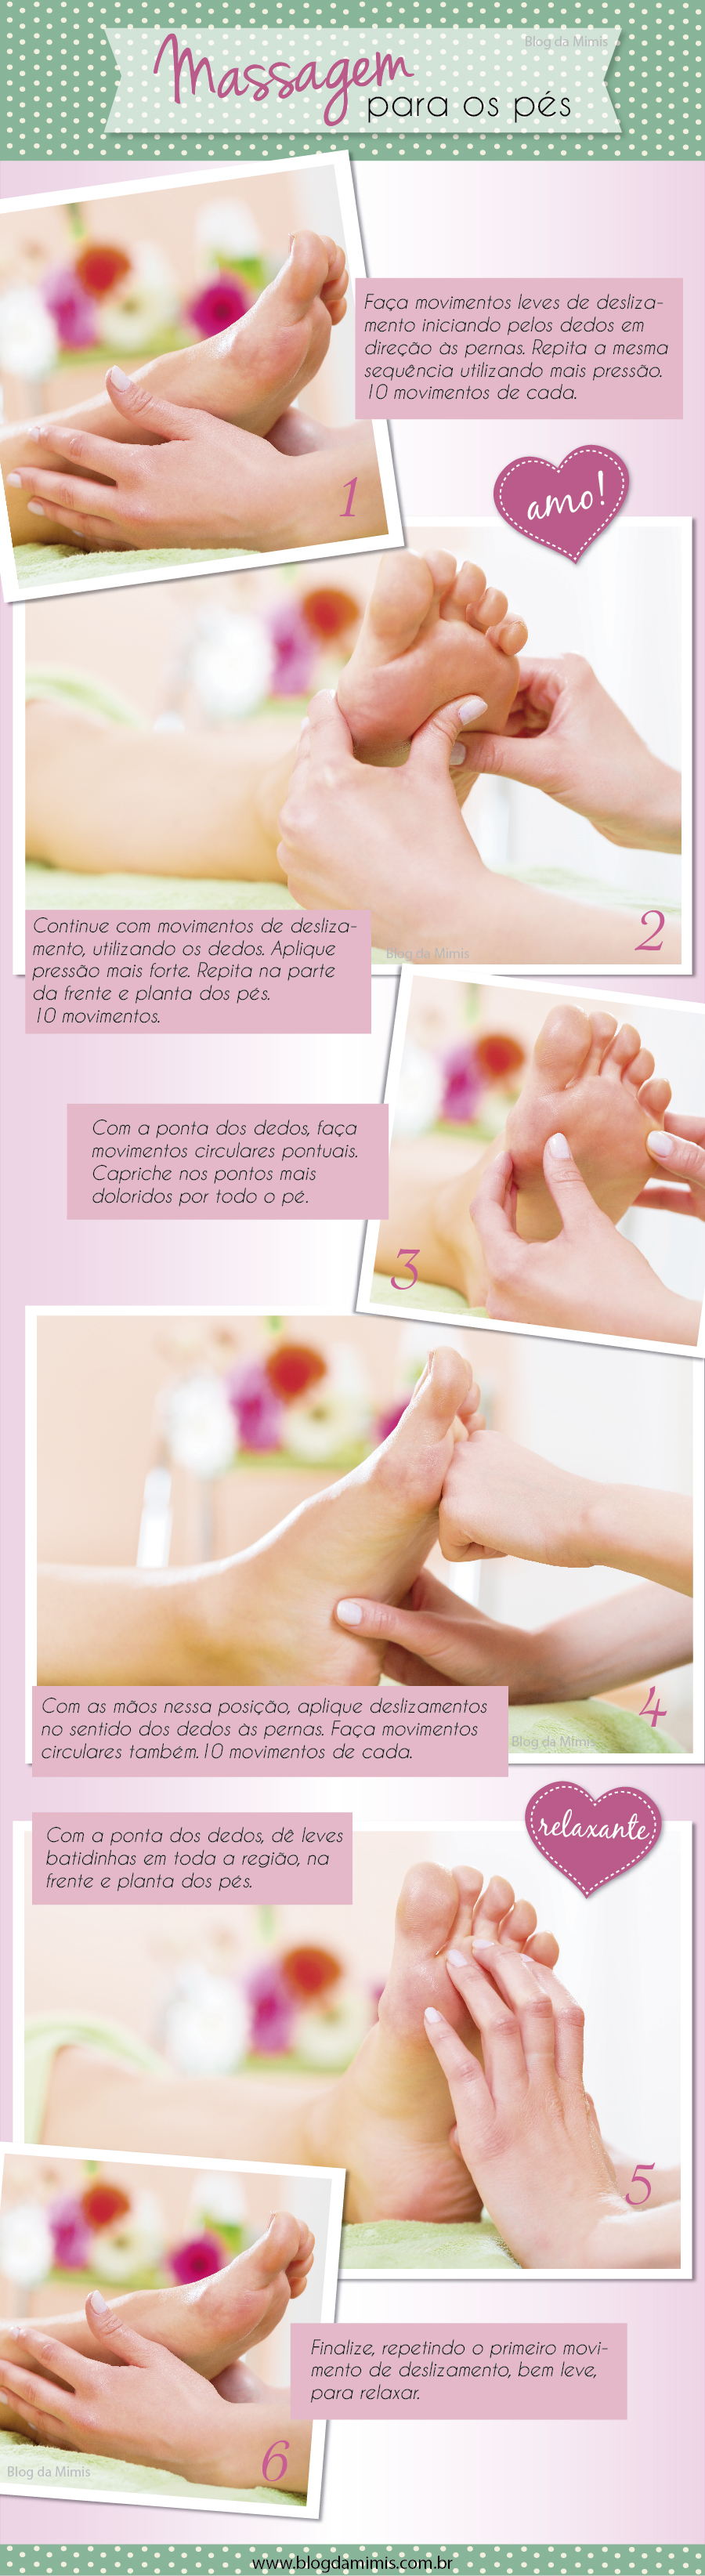 massagem-pés-blog-da-mimis-michelle-franzoni-01